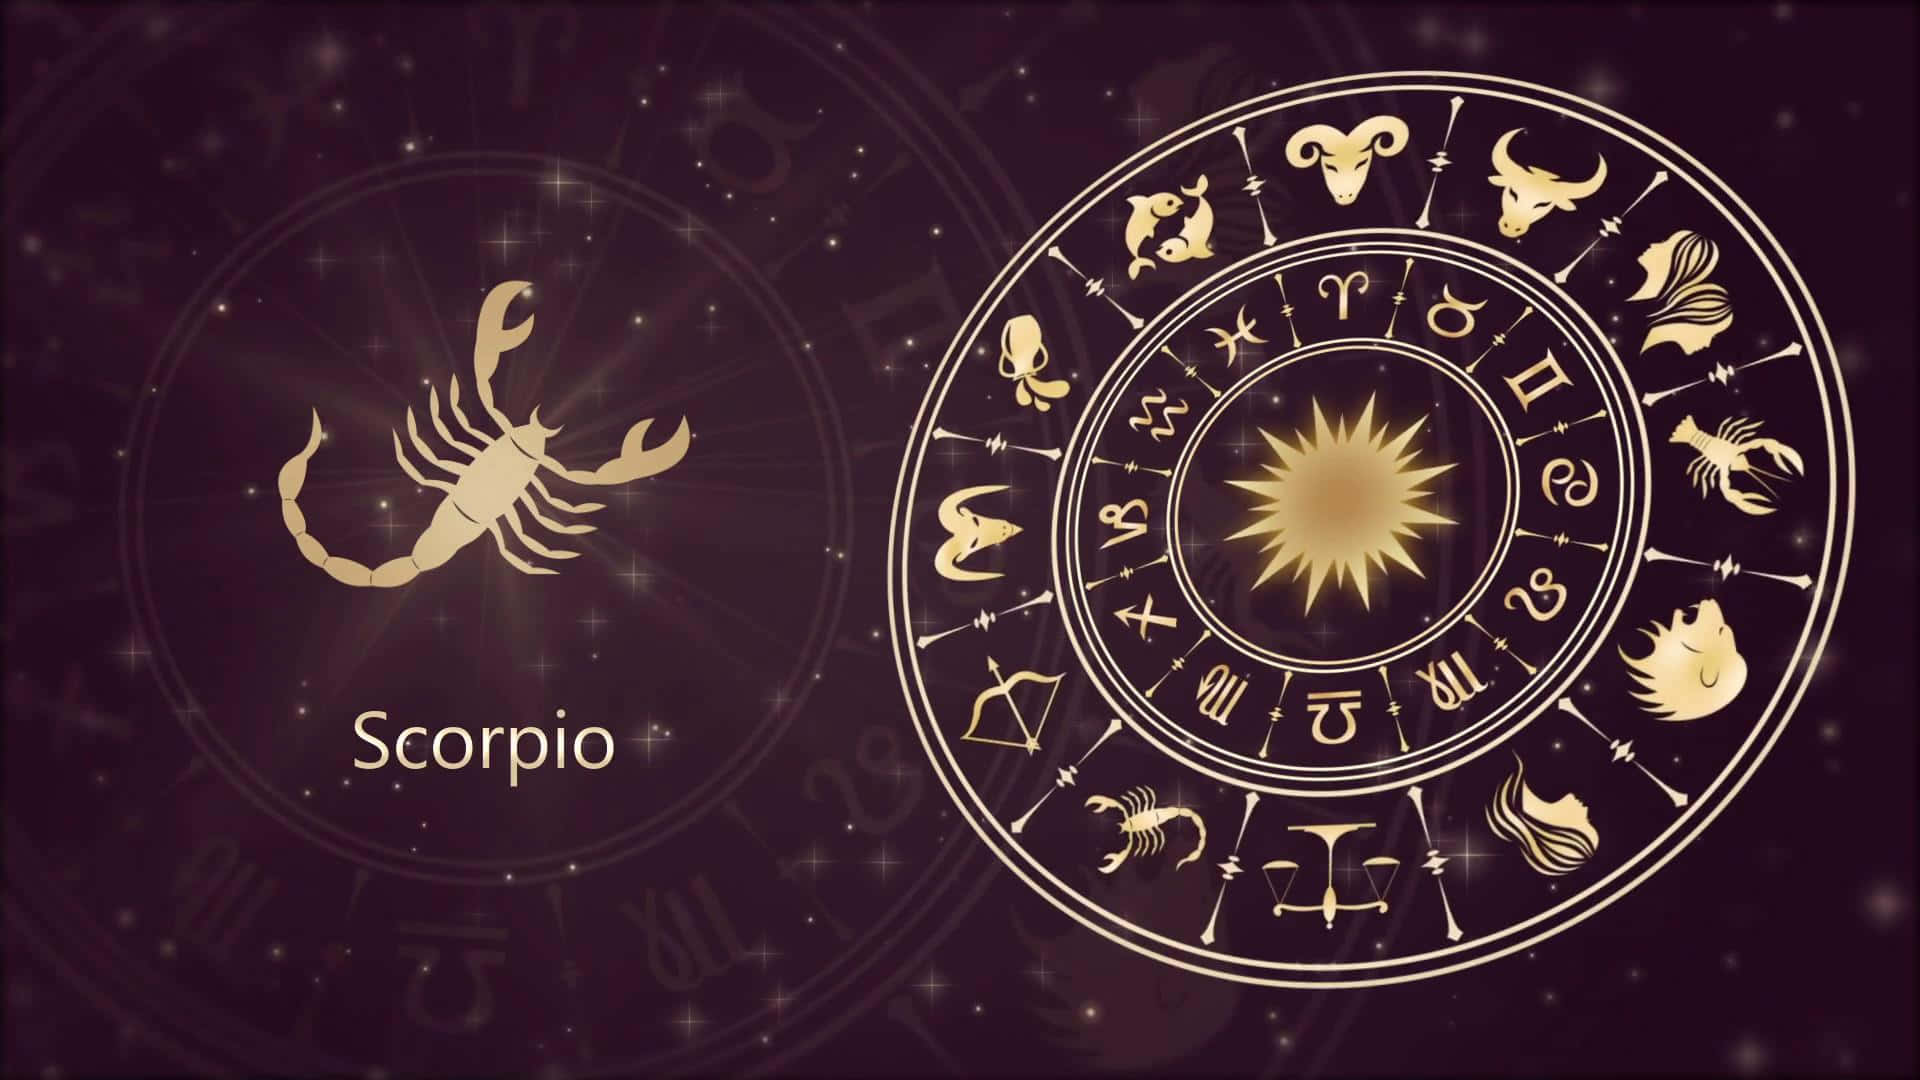 Scorpio: The Passionate Zodiac Sign